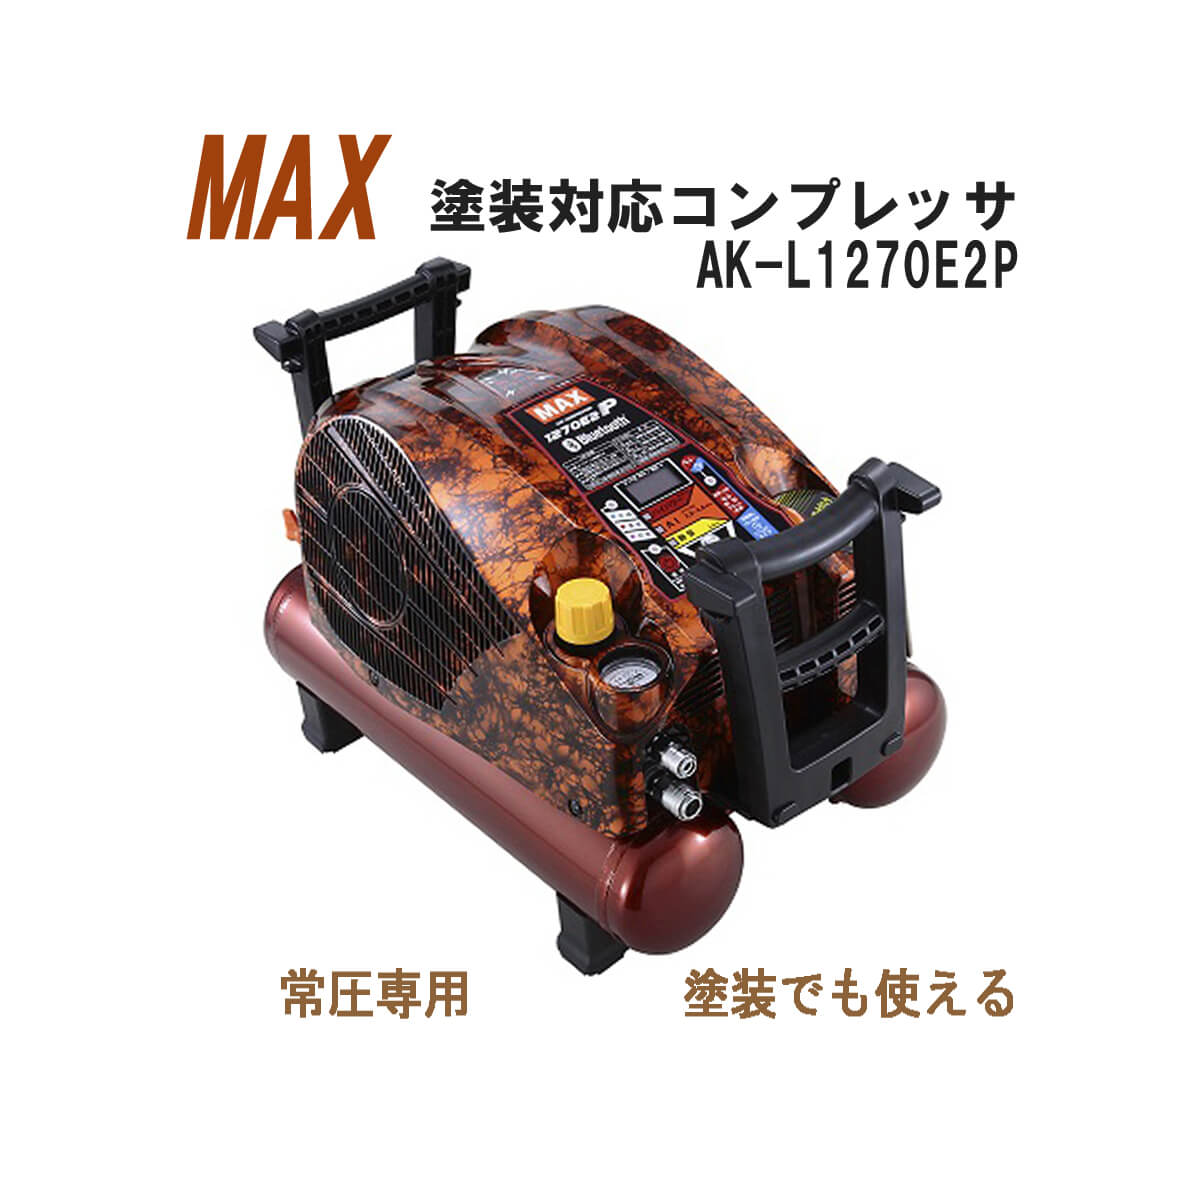 MAX AK-L1270E2P 塗装対応コンプレッサ(100Vタイプ)【徹底解説】